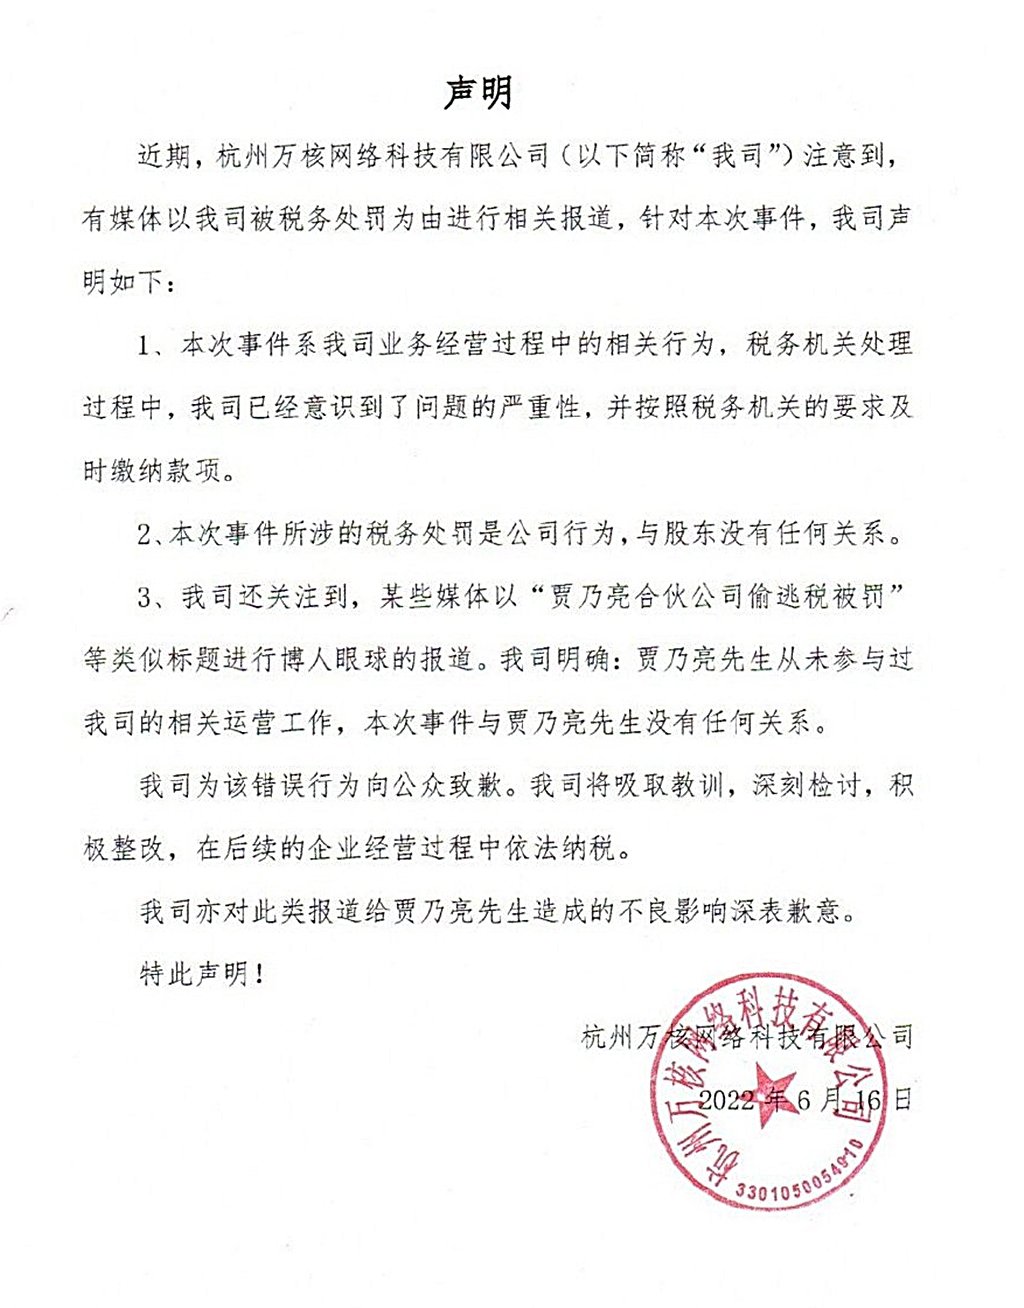 杭州万核网络科技有限公司也发文致歉贾乃亮。